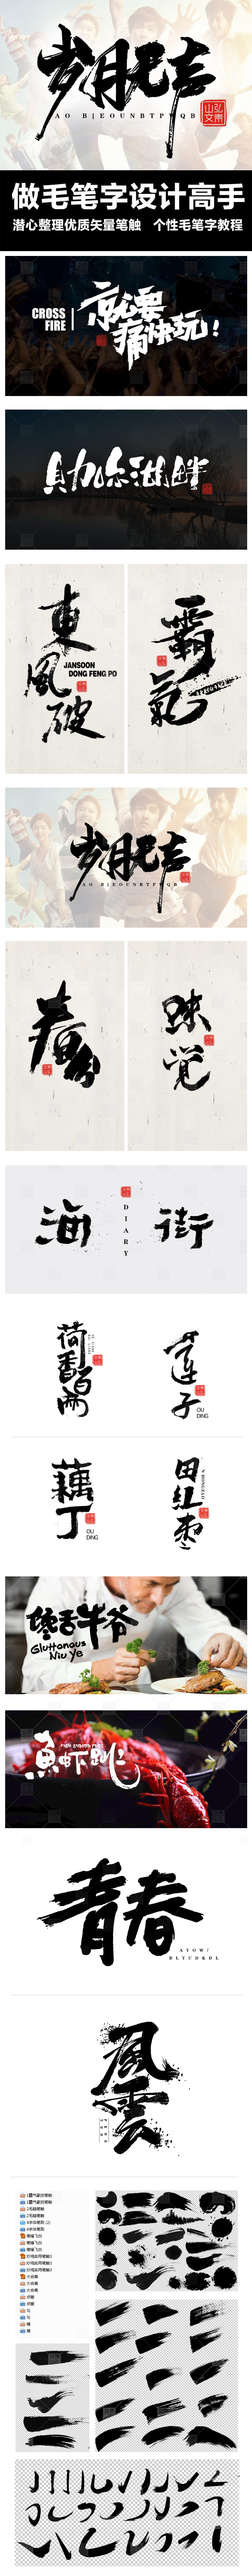 毛笔字体设计笔触飞白墨笔画水墨书法中国风墨迹笔刷